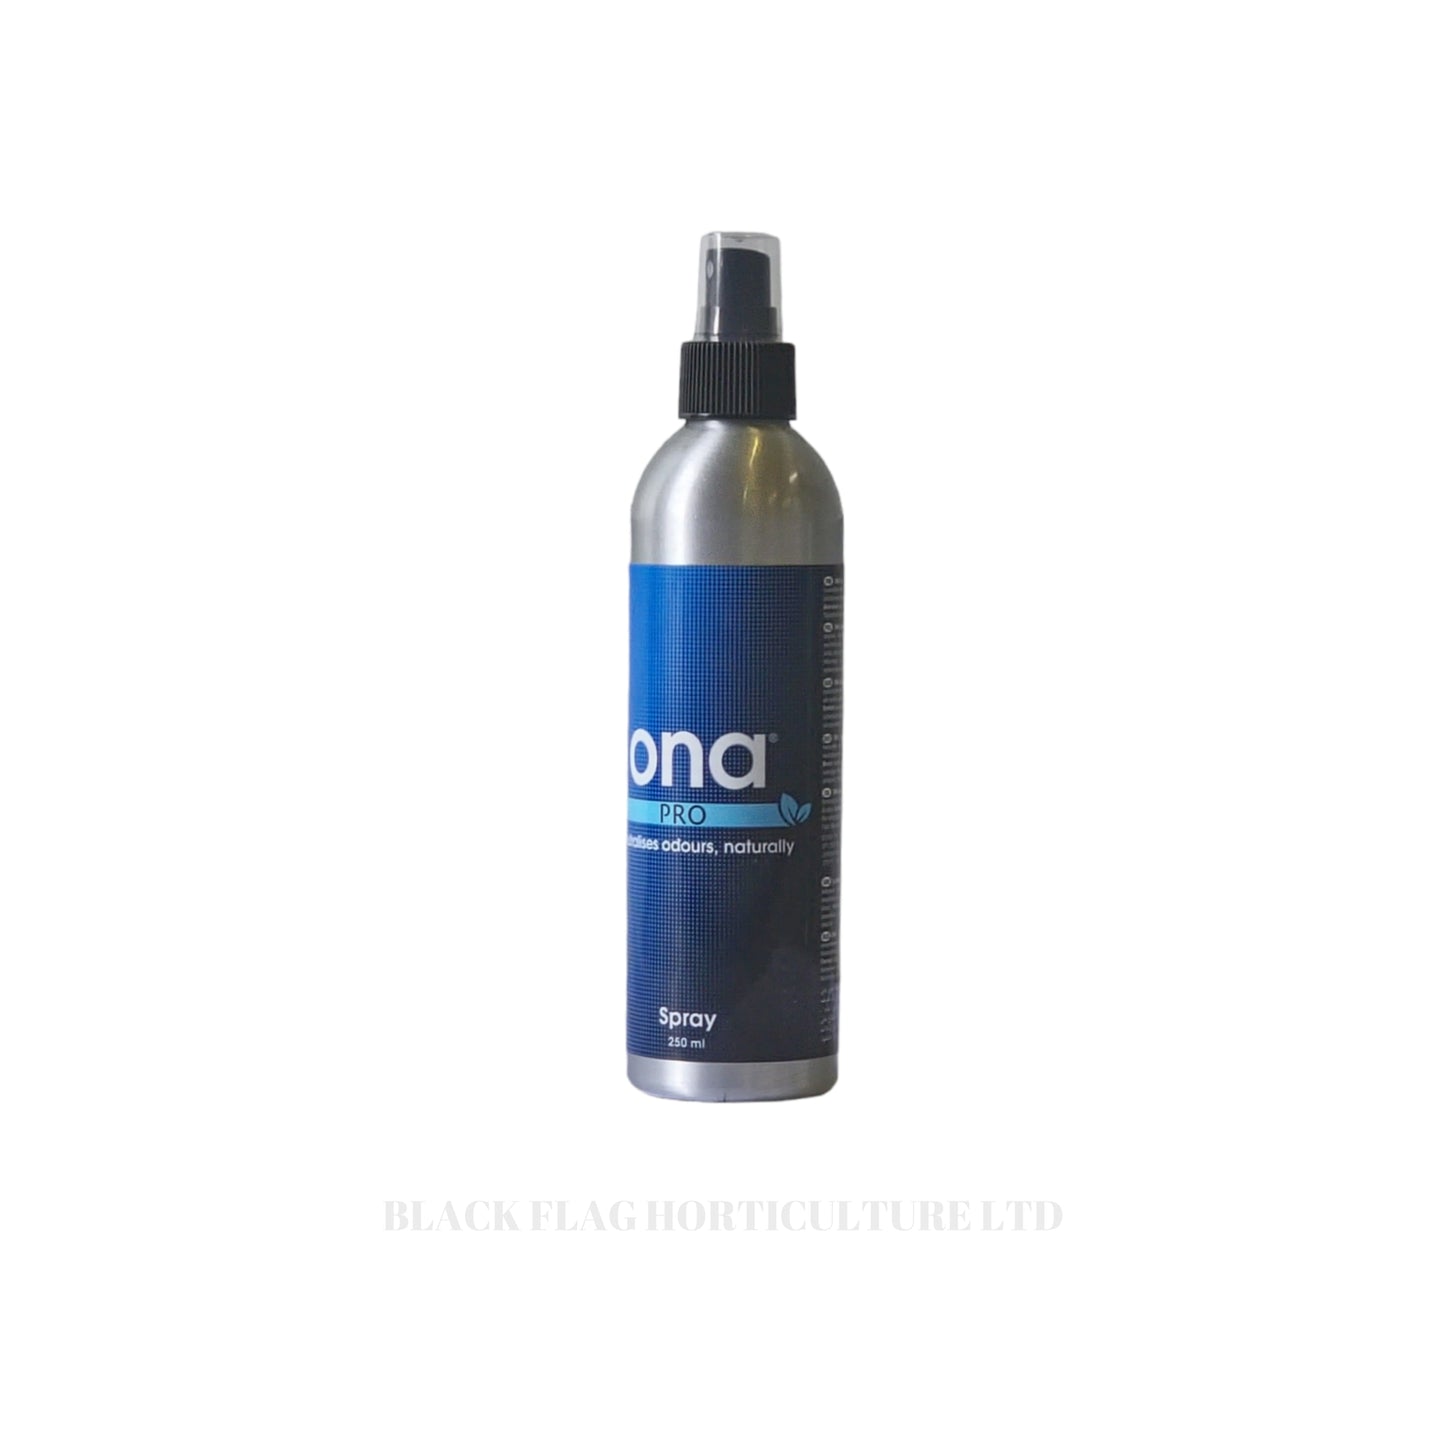 Ona - Sprays (250ml)